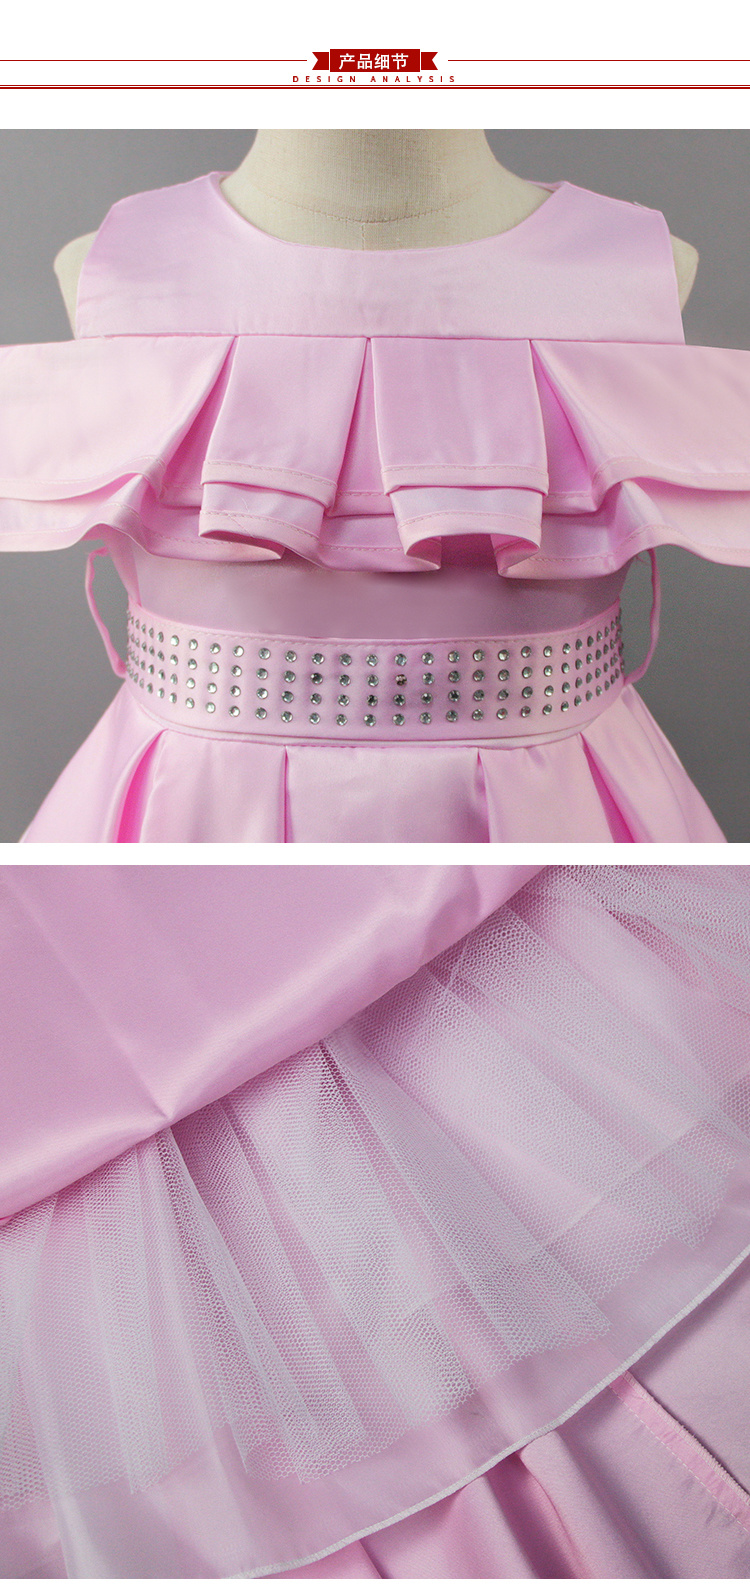 Girls' Dress Sequined Dress Performance Dresses, Princess Dress, Fluffy Dress Sleeveless Children's Dress